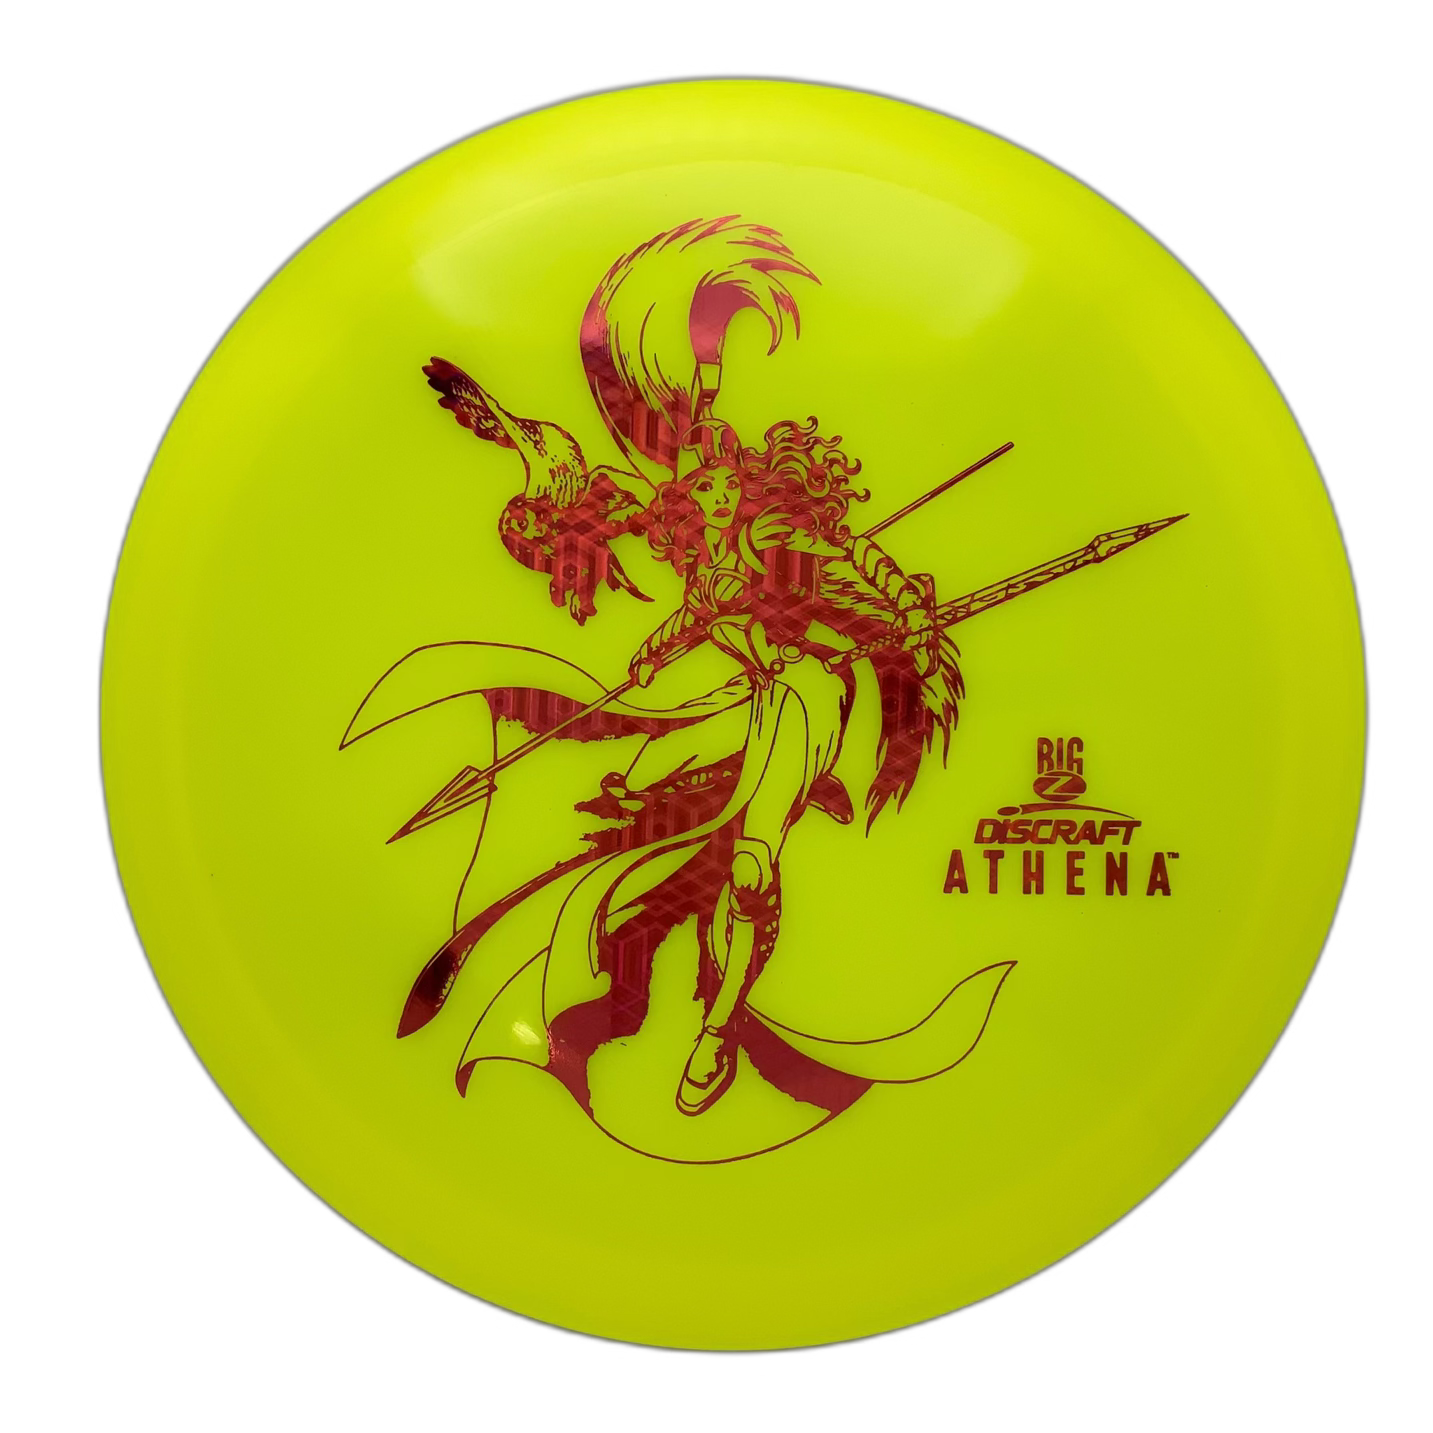 Discraft Athena - Astro Discs TX - Houston Disc Golf